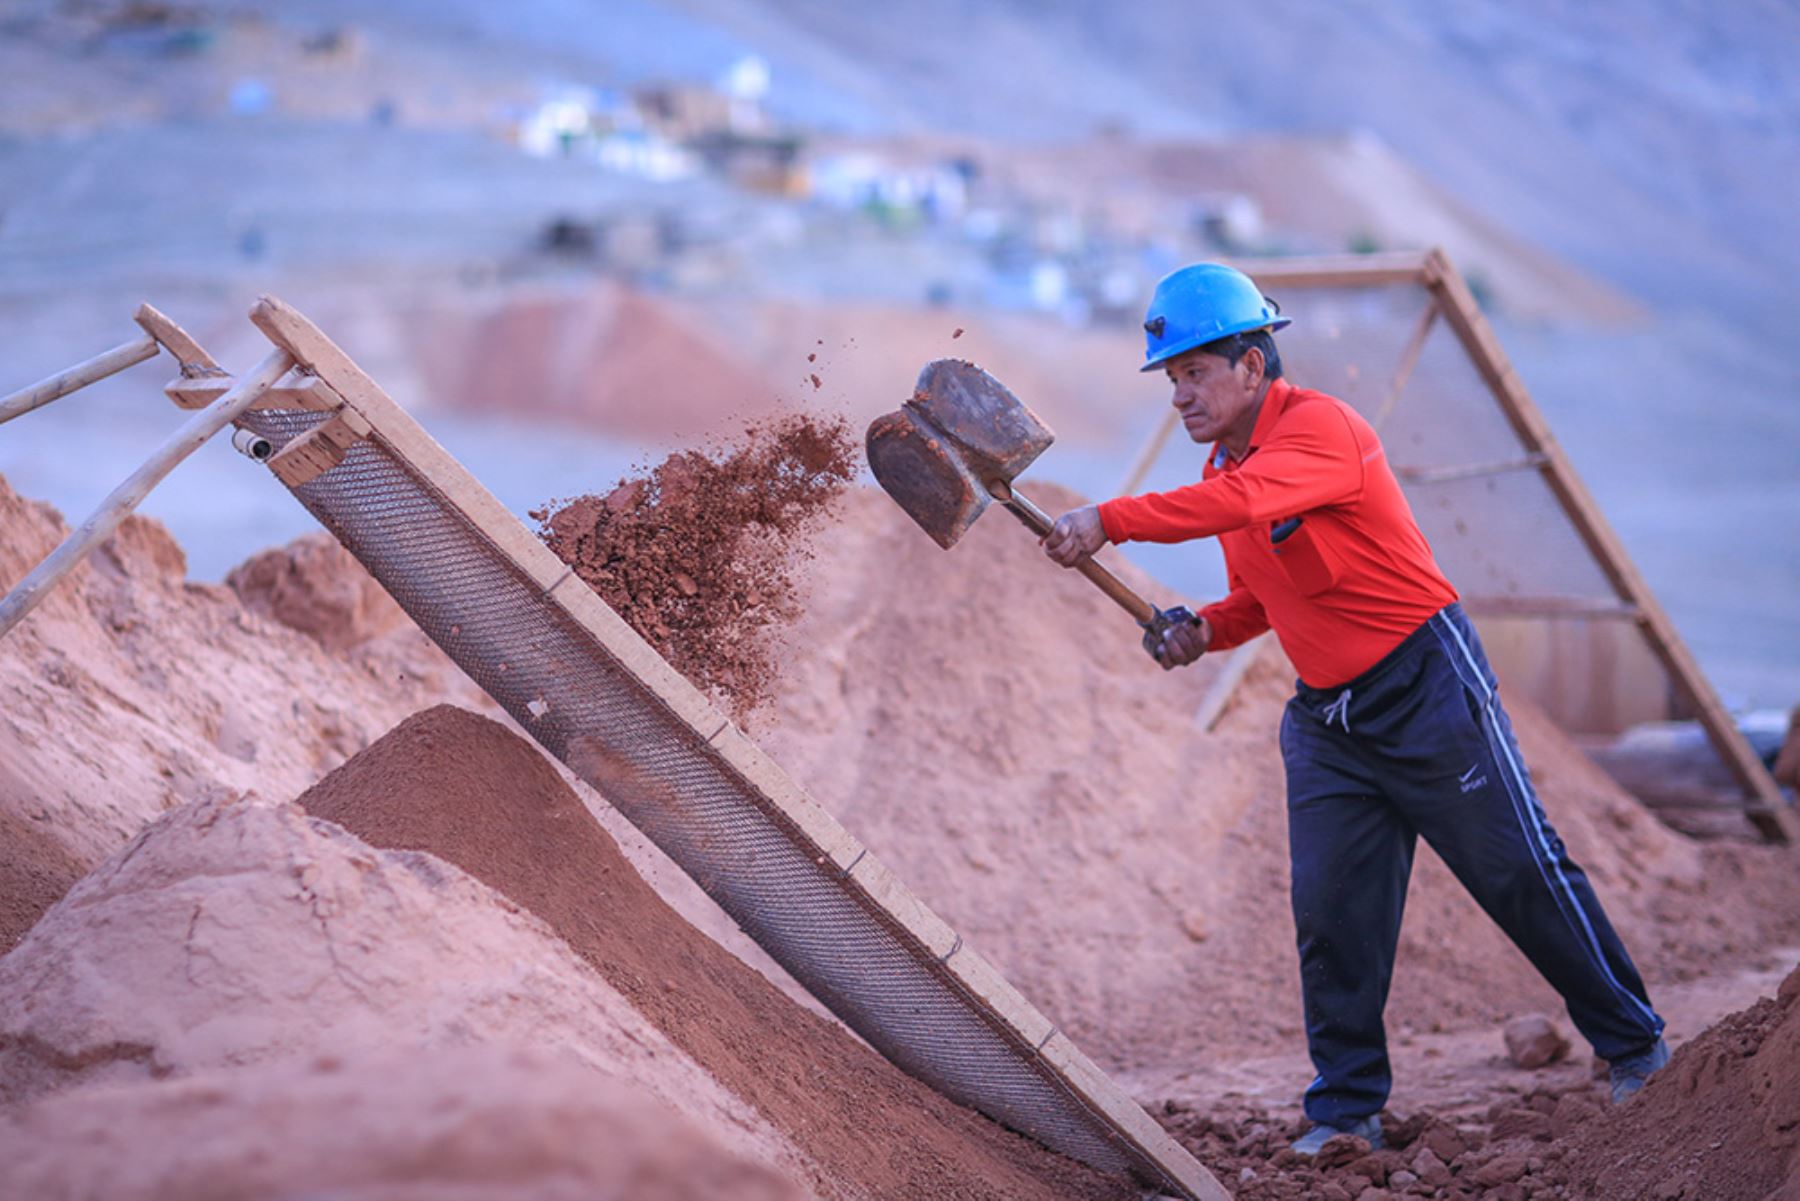 La Dirección General de Energía y Minas de Apurímac promueve alianzas estratégicas que generen mejores oportunidades de mercado para los pequeños productores mineros y productores mineros artesanales.